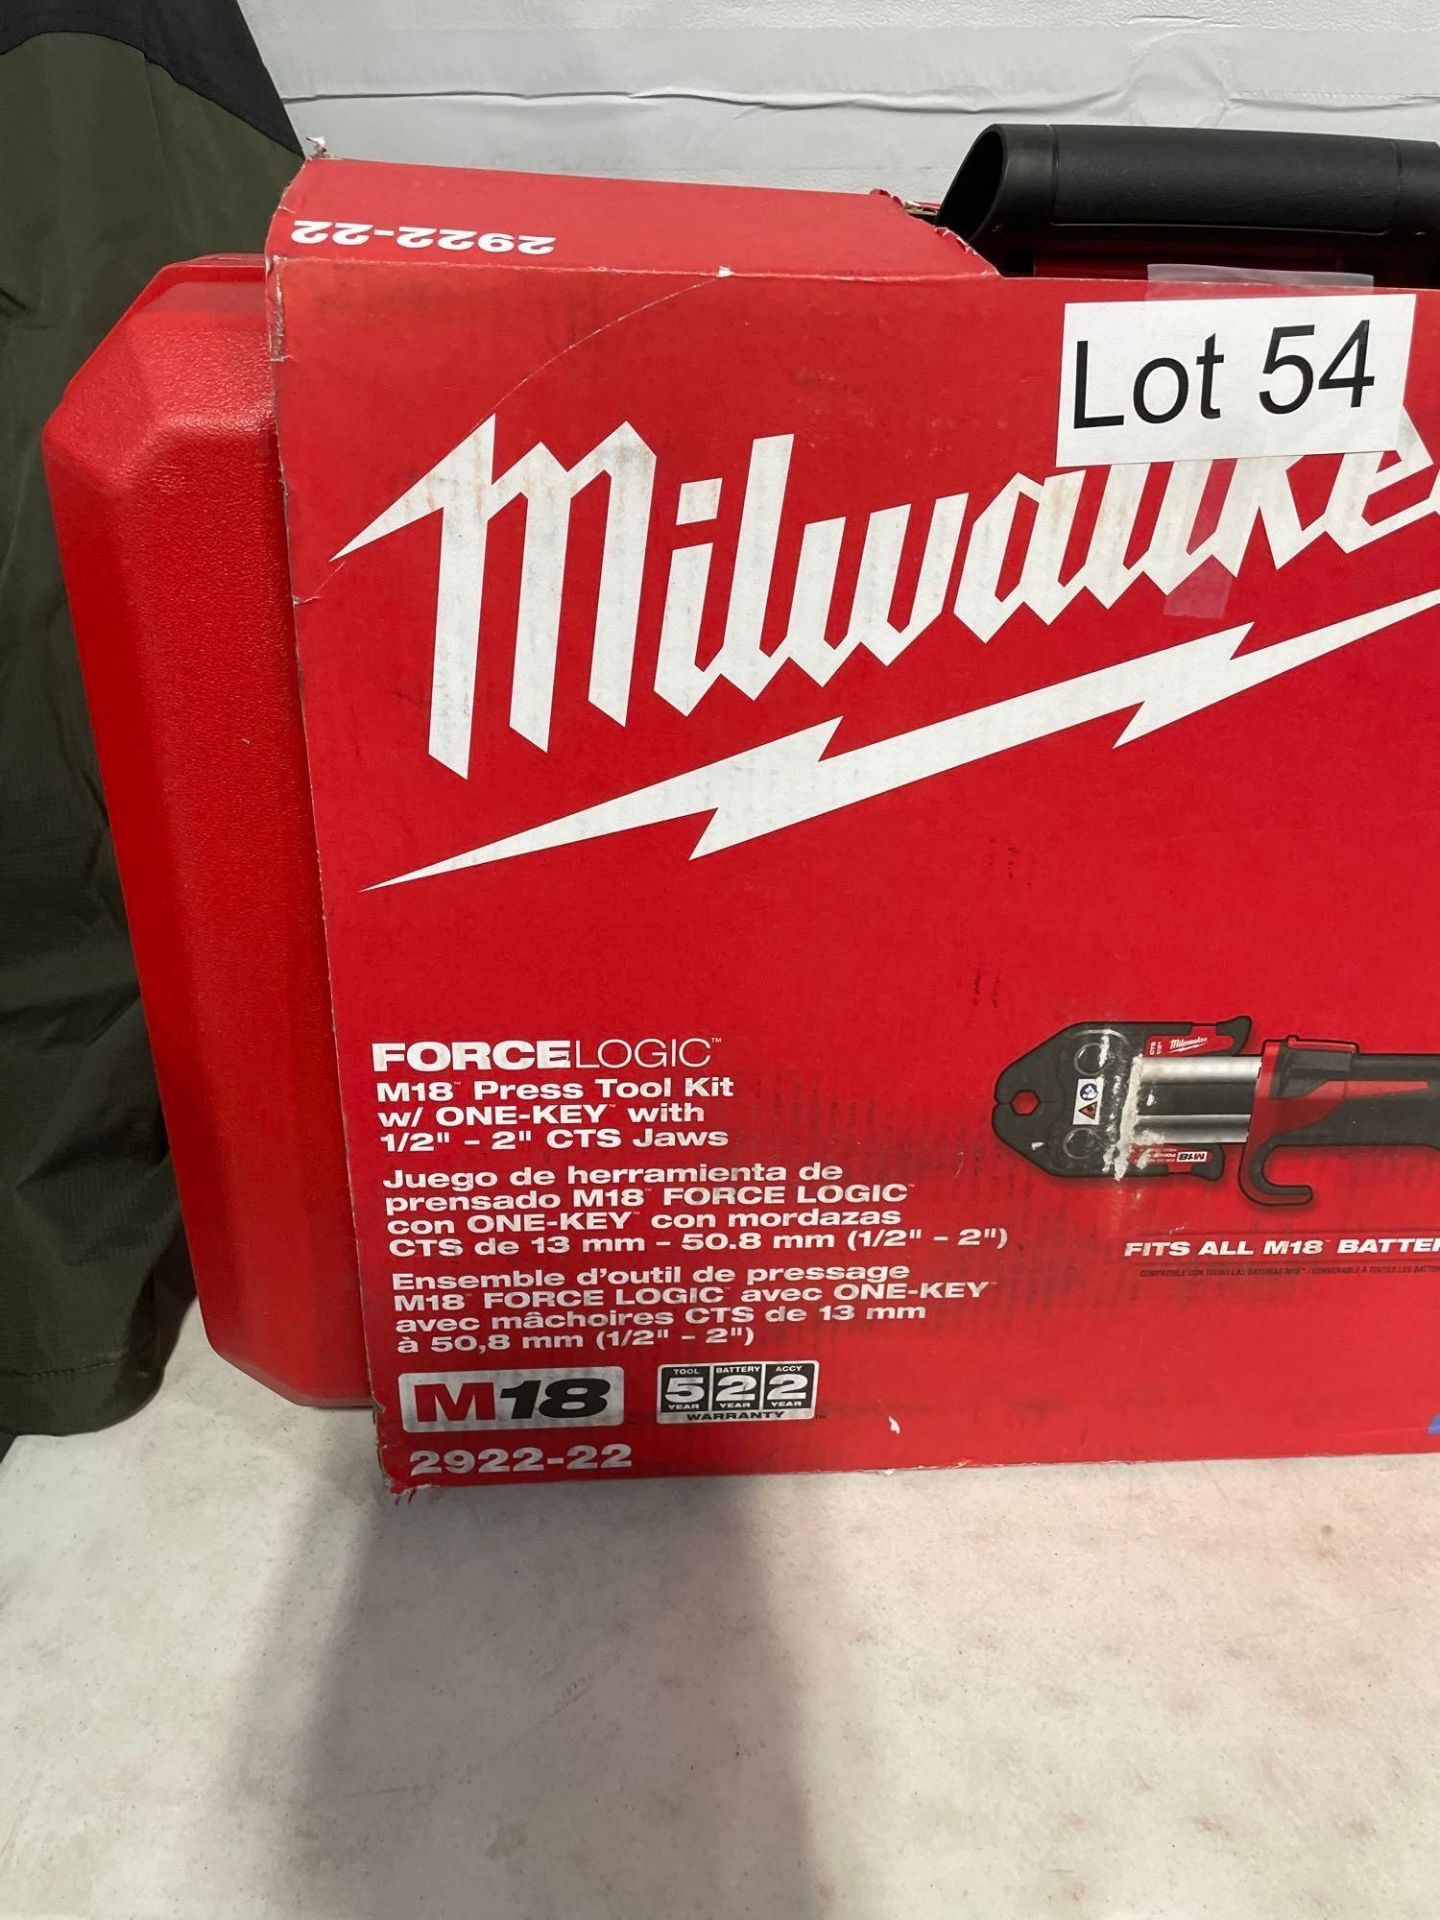 Milwaukee Force Logic M18 2922-22 - Image 2 of 5